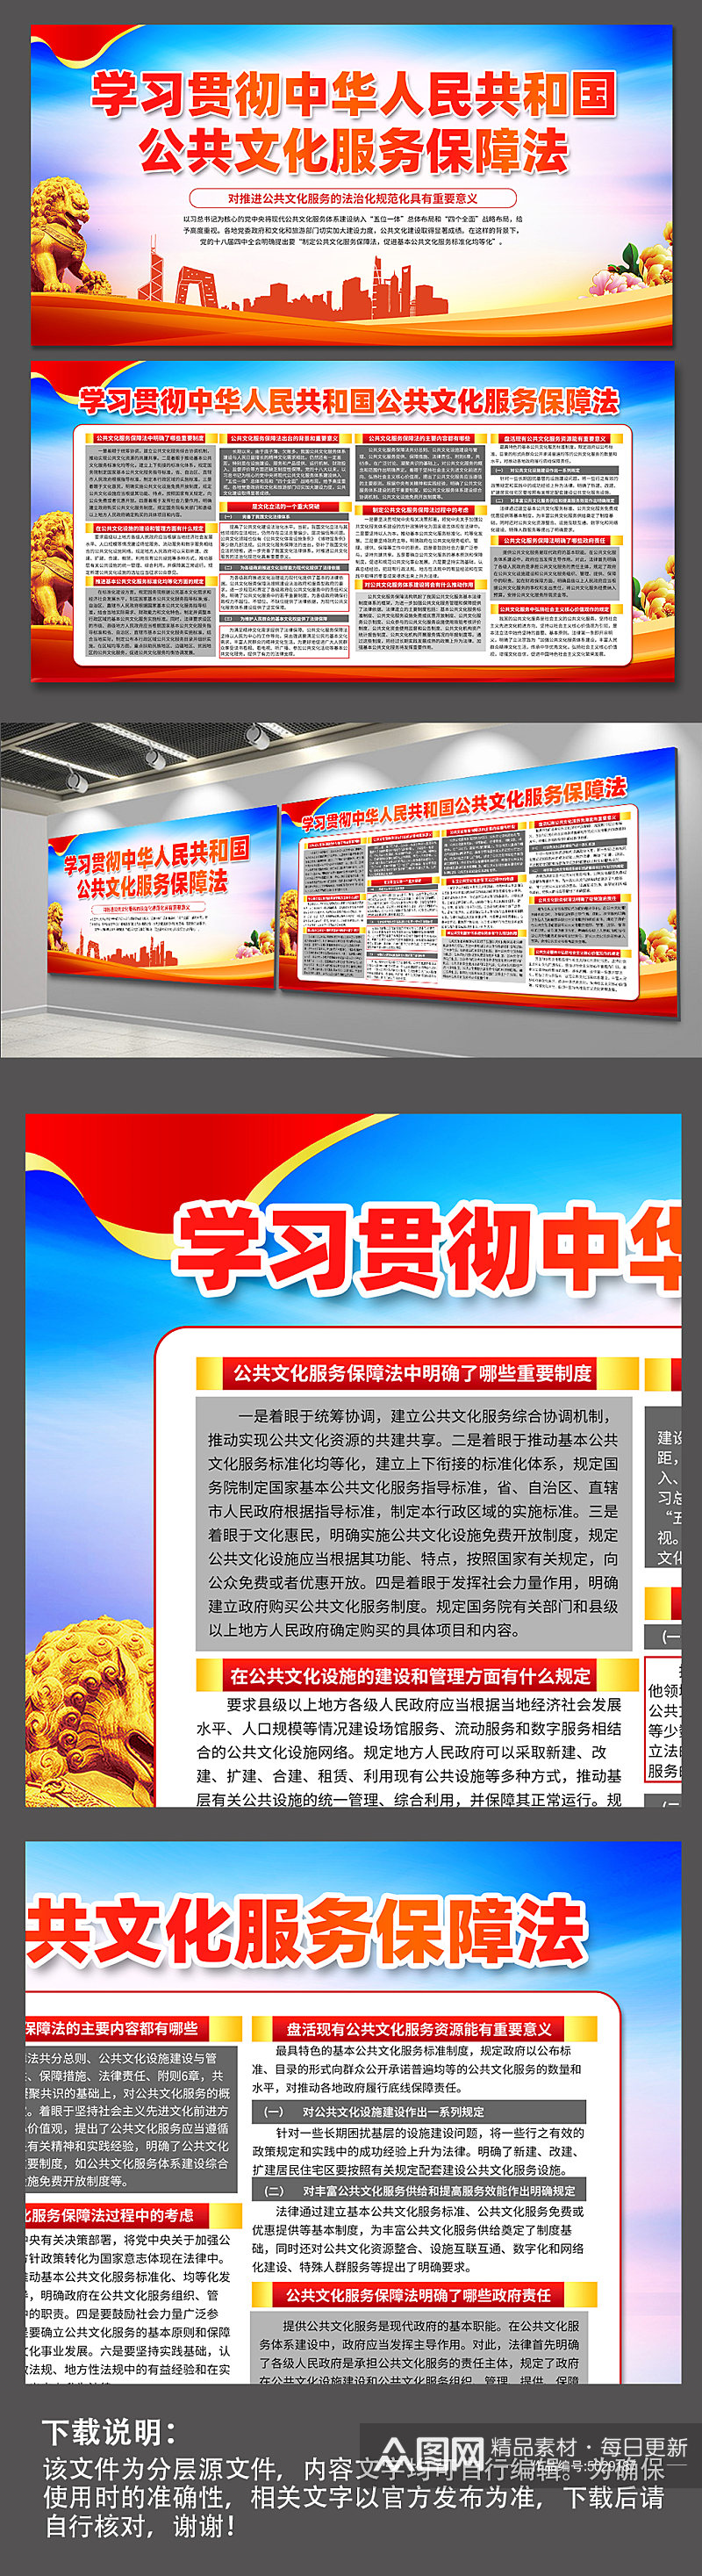 红色中华人民共和国公共文化服务保障法展板素材